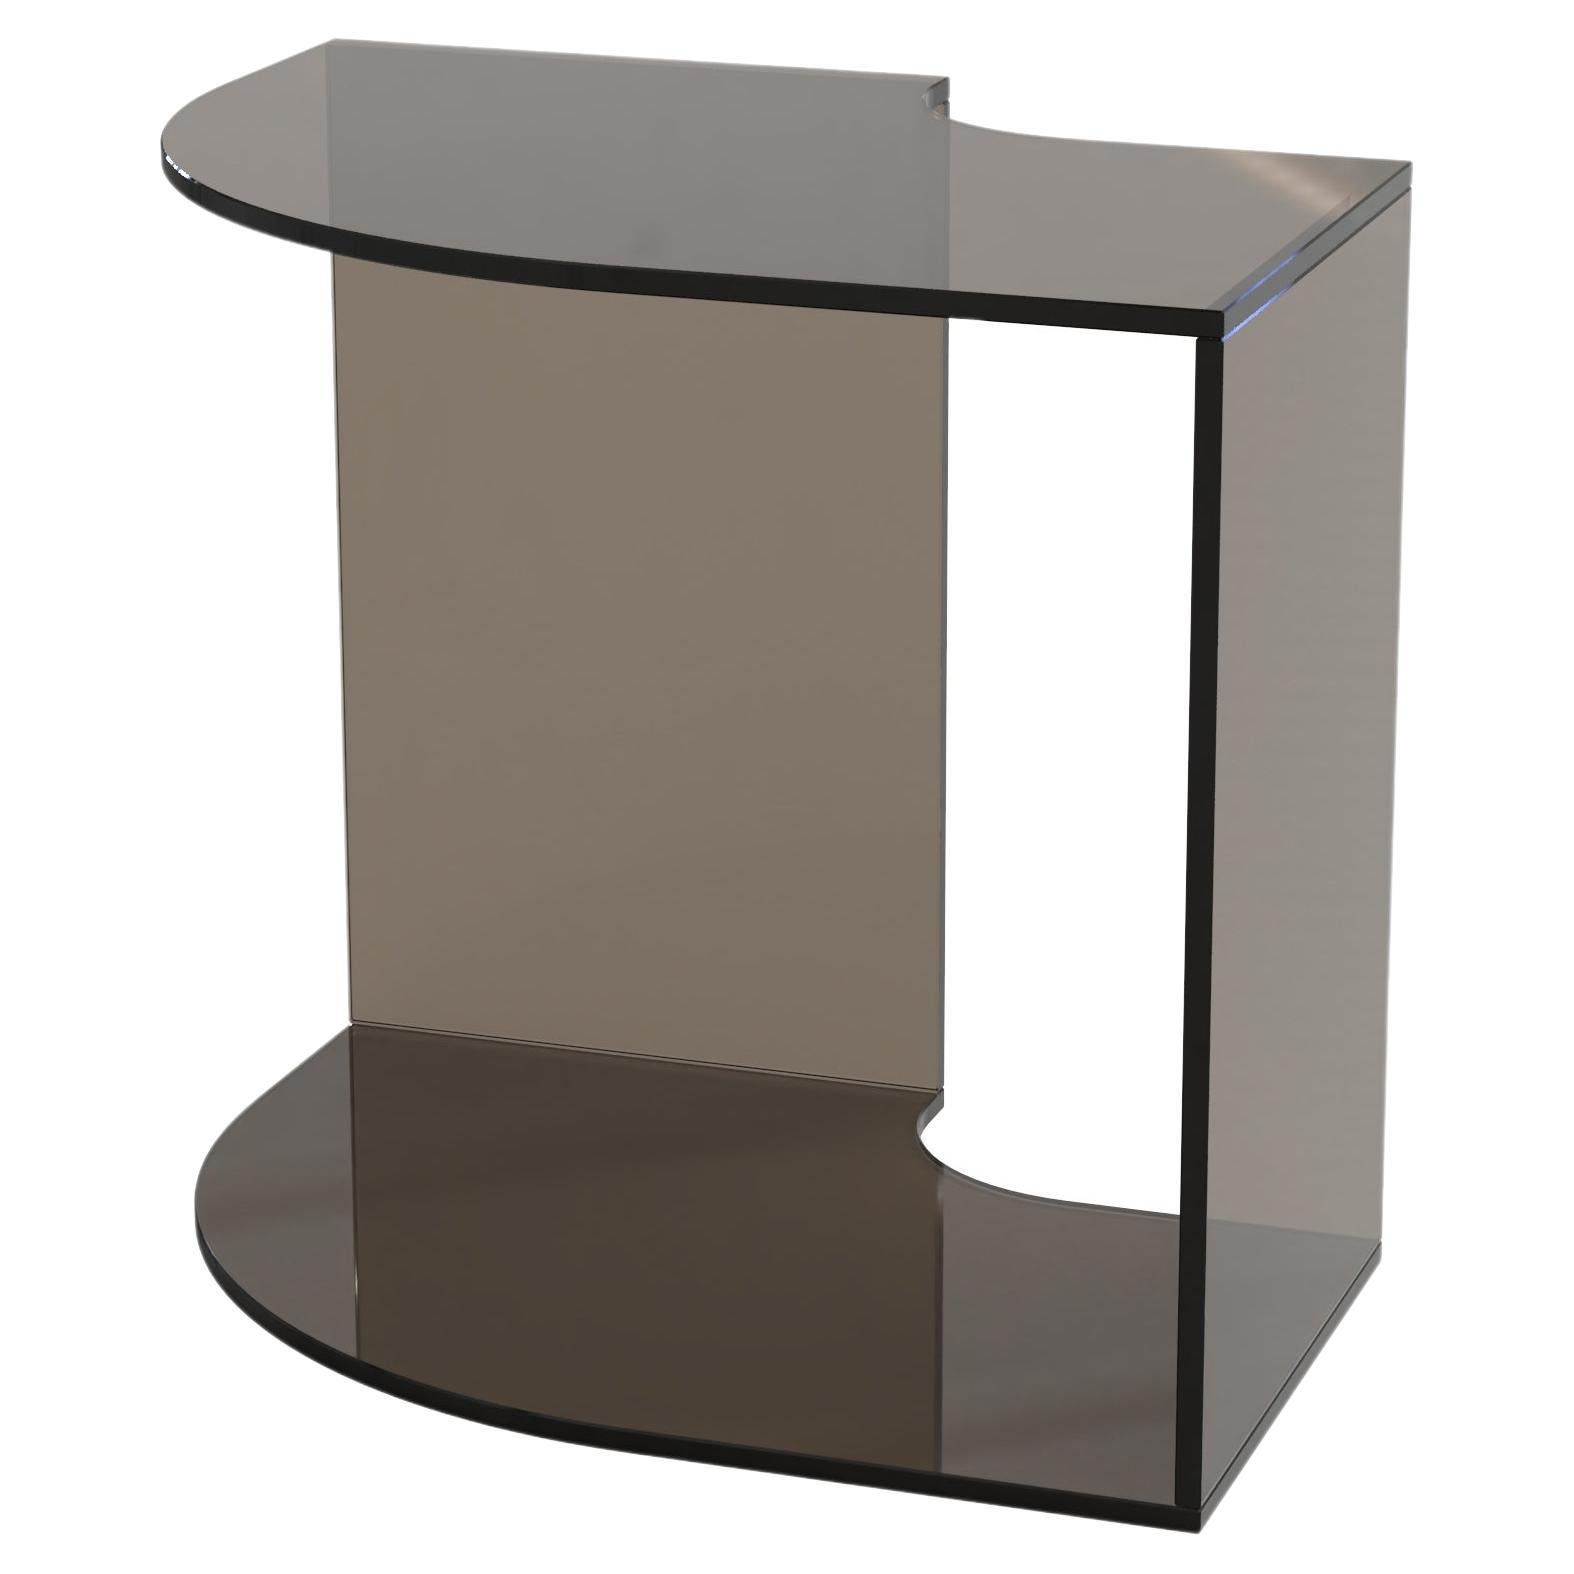 Contemporary Limited Edition Bronze Glass Table, Quarter V1 by Edizione Limitata